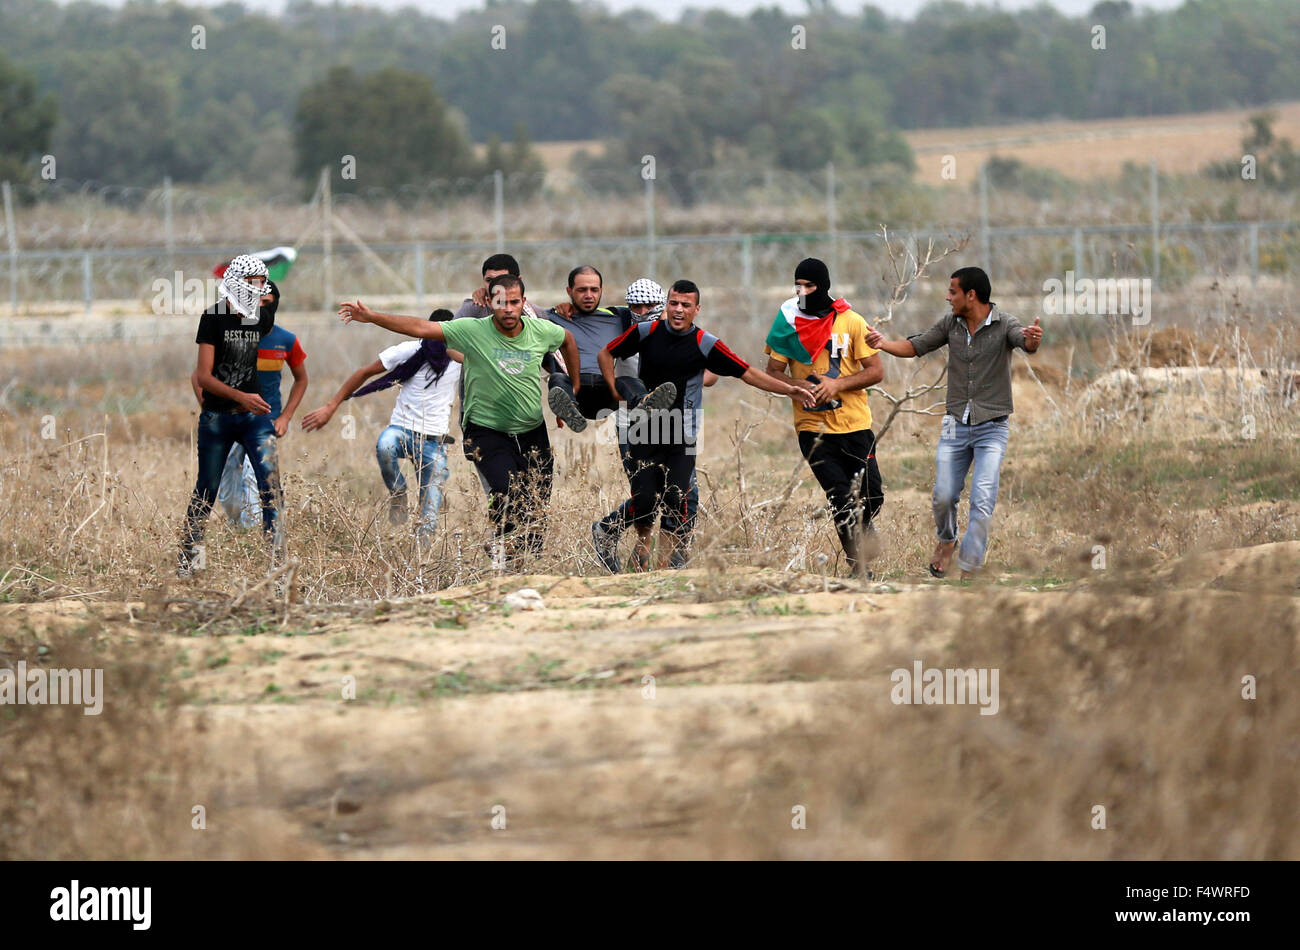 Buriej, Gazastreifen, Palästinensische Gebiete. 23. Oktober 2015. Palästinensische Demonstranten tragen einen verletzten Kameraden bei Zusammenstößen mit israelischen Sicherheitskräften in der Nähe der Grenze zwischen israelischen und zentrale Gaza-Streifen, am 23. Oktober 2015. Palästinensischen Fraktionen gefordert Massenkundgebungen gegen Israel in den besetzten Westjordanland und Ostjerusalem in einen '' Tag des Zorns '' am Freitag, als Welt und regionale Mächte angedrückt mit Vorträgen zu versuchen, mehr als drei Wochen des Blutvergießens Credit Ende: Yasser Qudih/APA Bilder/ZUMA Draht/Alamy Live News Stockfoto